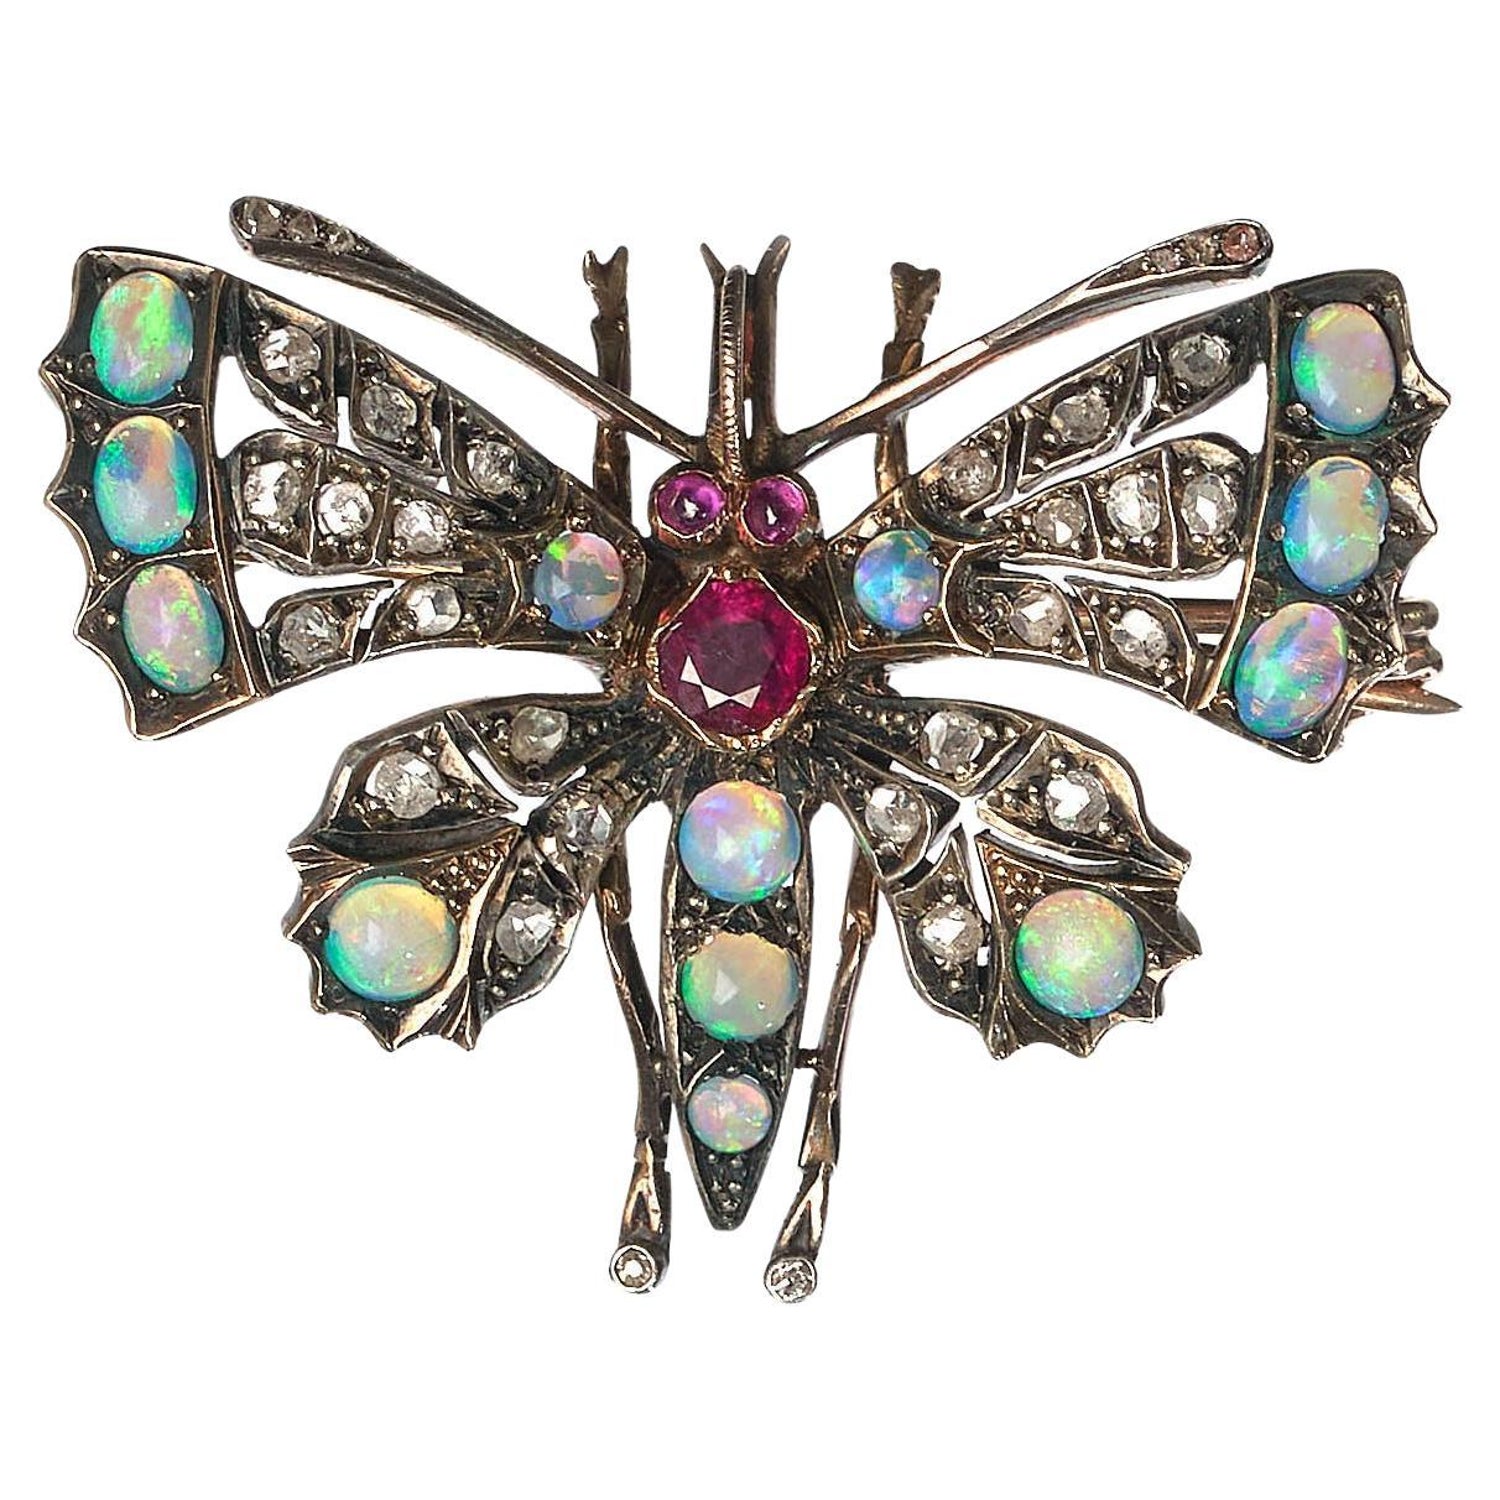 Butterfly Opal Brooch - 14 For Sale on 1stDibs